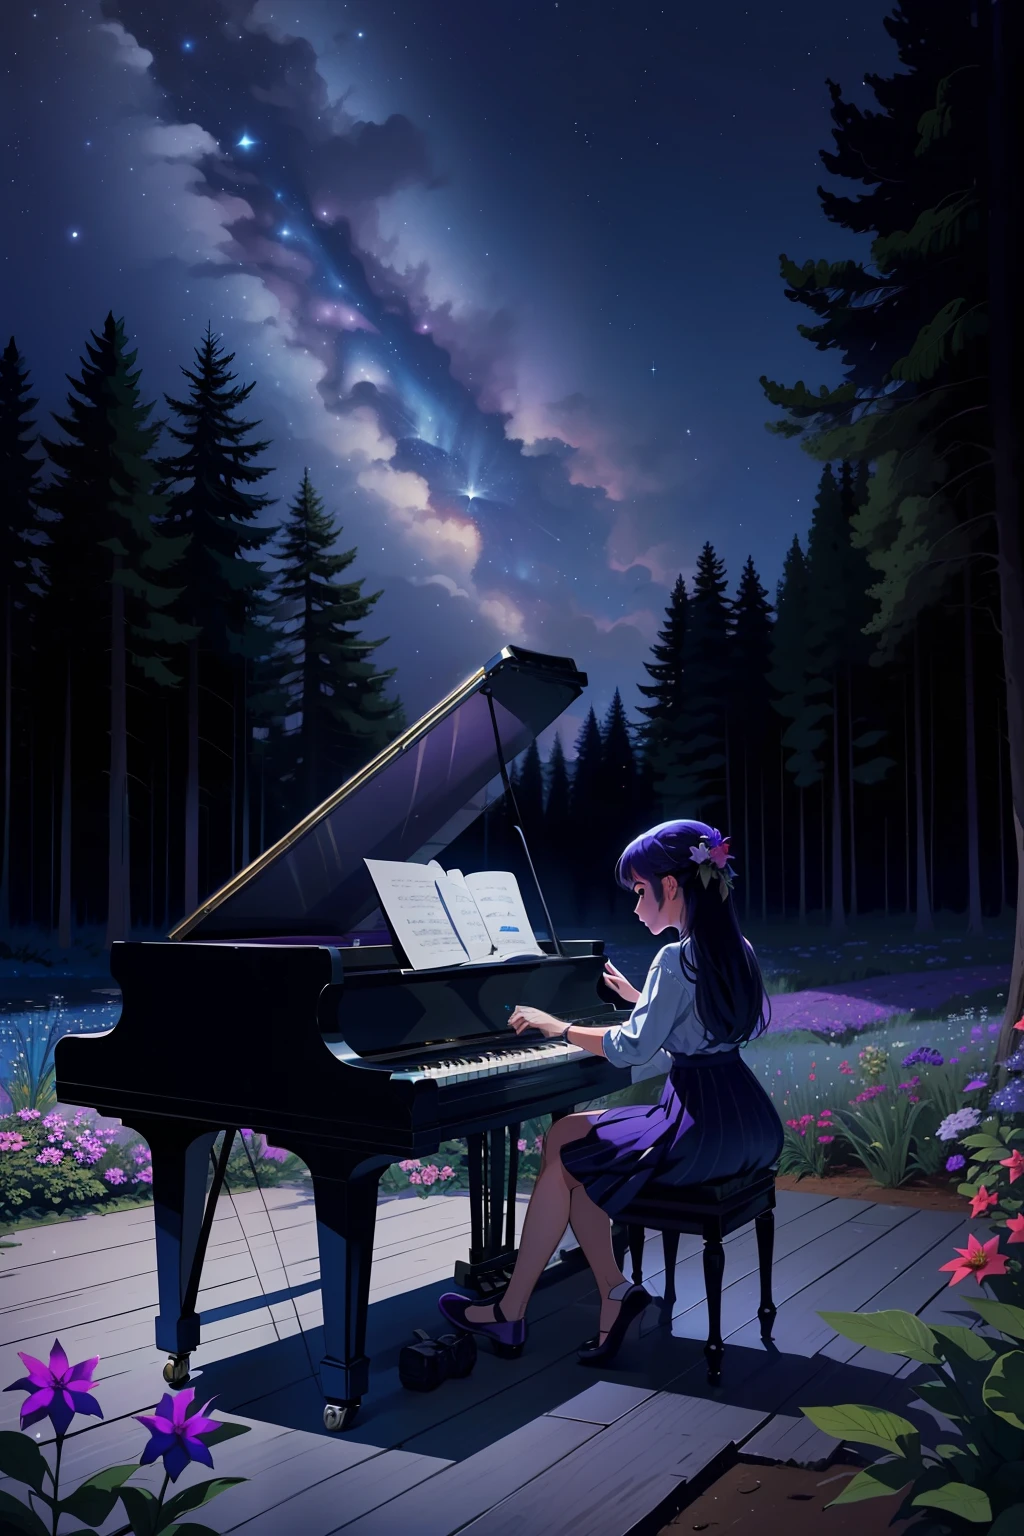 一个女孩在树林里弹钢琴, 夜空呈现以下颜色, 普鲁士蓝, 青色, 群青, 紫红色, 紫色的, 很多星星, 森林里的动物们聚集在女孩身边聆听她的音乐 . s, 有一条小溪，水清澈见底, 有花, 图片必须非常大，并且必须详细.